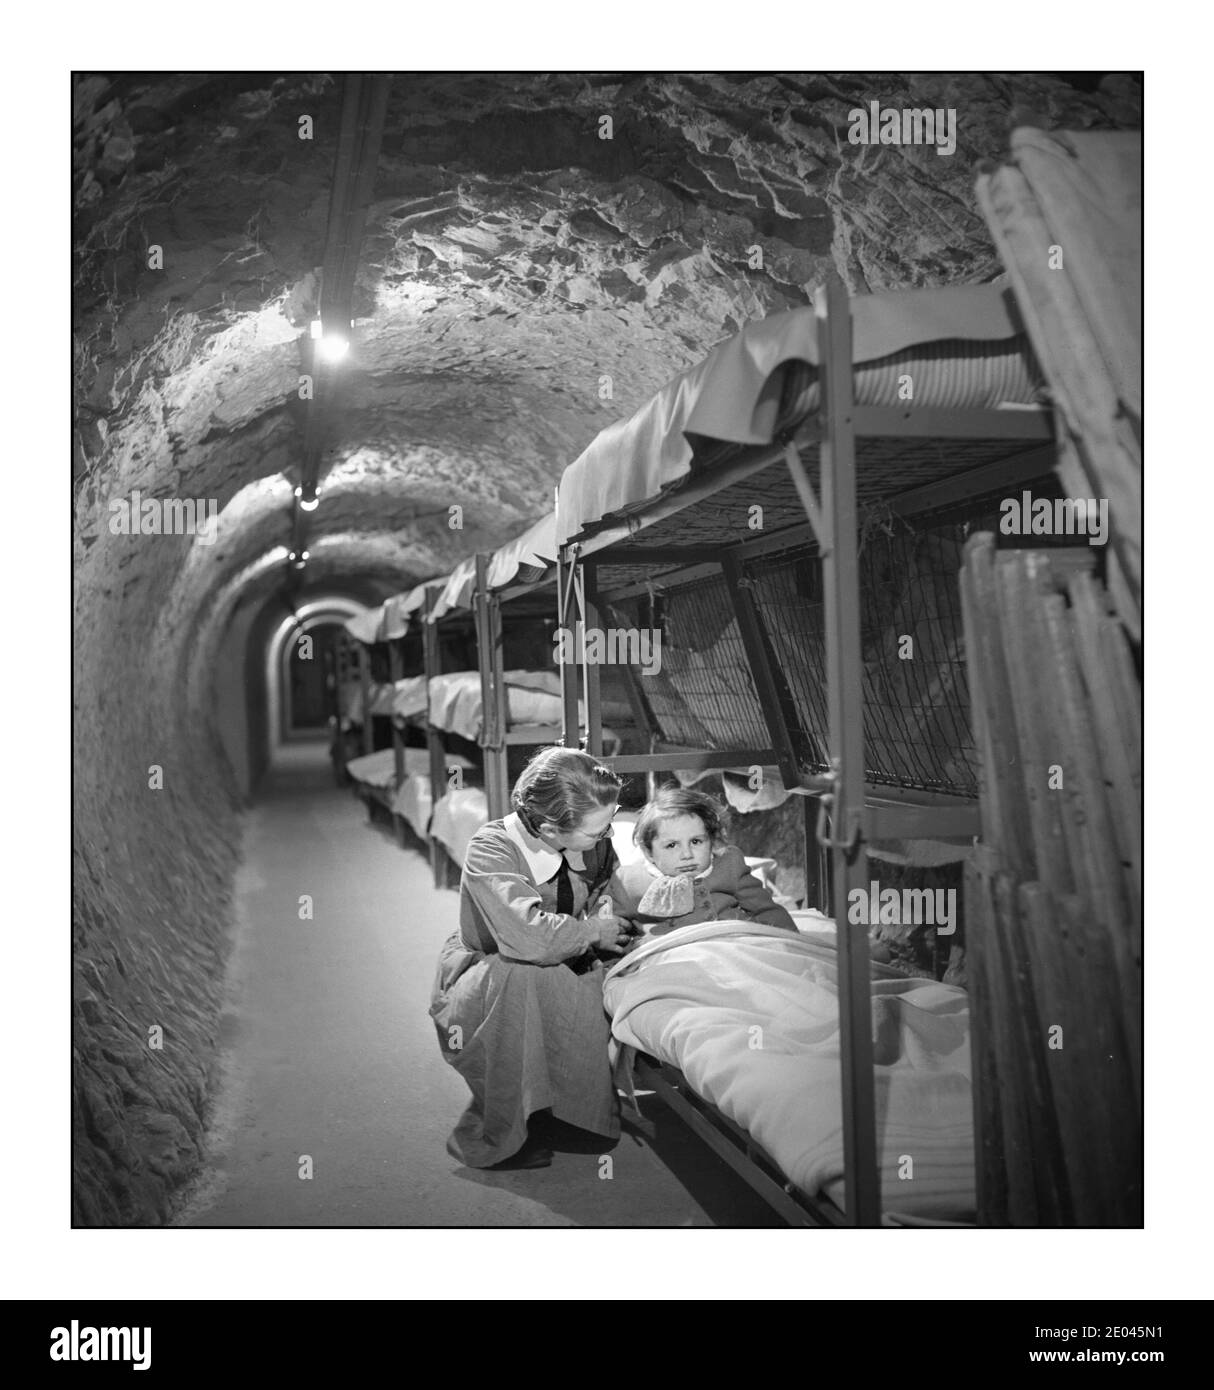 WW2 London Blitz femme s'agenouillant à côté d'un lit d'enfant, dans un tunnel de raid aérien souterrain pendant le bombardement de Londres pendant la Seconde Guerre mondiale Frissell, Toni, 1907-1988, photographe [1945 janv.] - Guerre mondiale, 1939-1945--Défense civile--Angleterre--Londres--1940-1950 - tunnels--Angleterre--Londres--1940-1950 abris aériens en raid--Angleterre--Londres--1940-1950 Banque D'Images